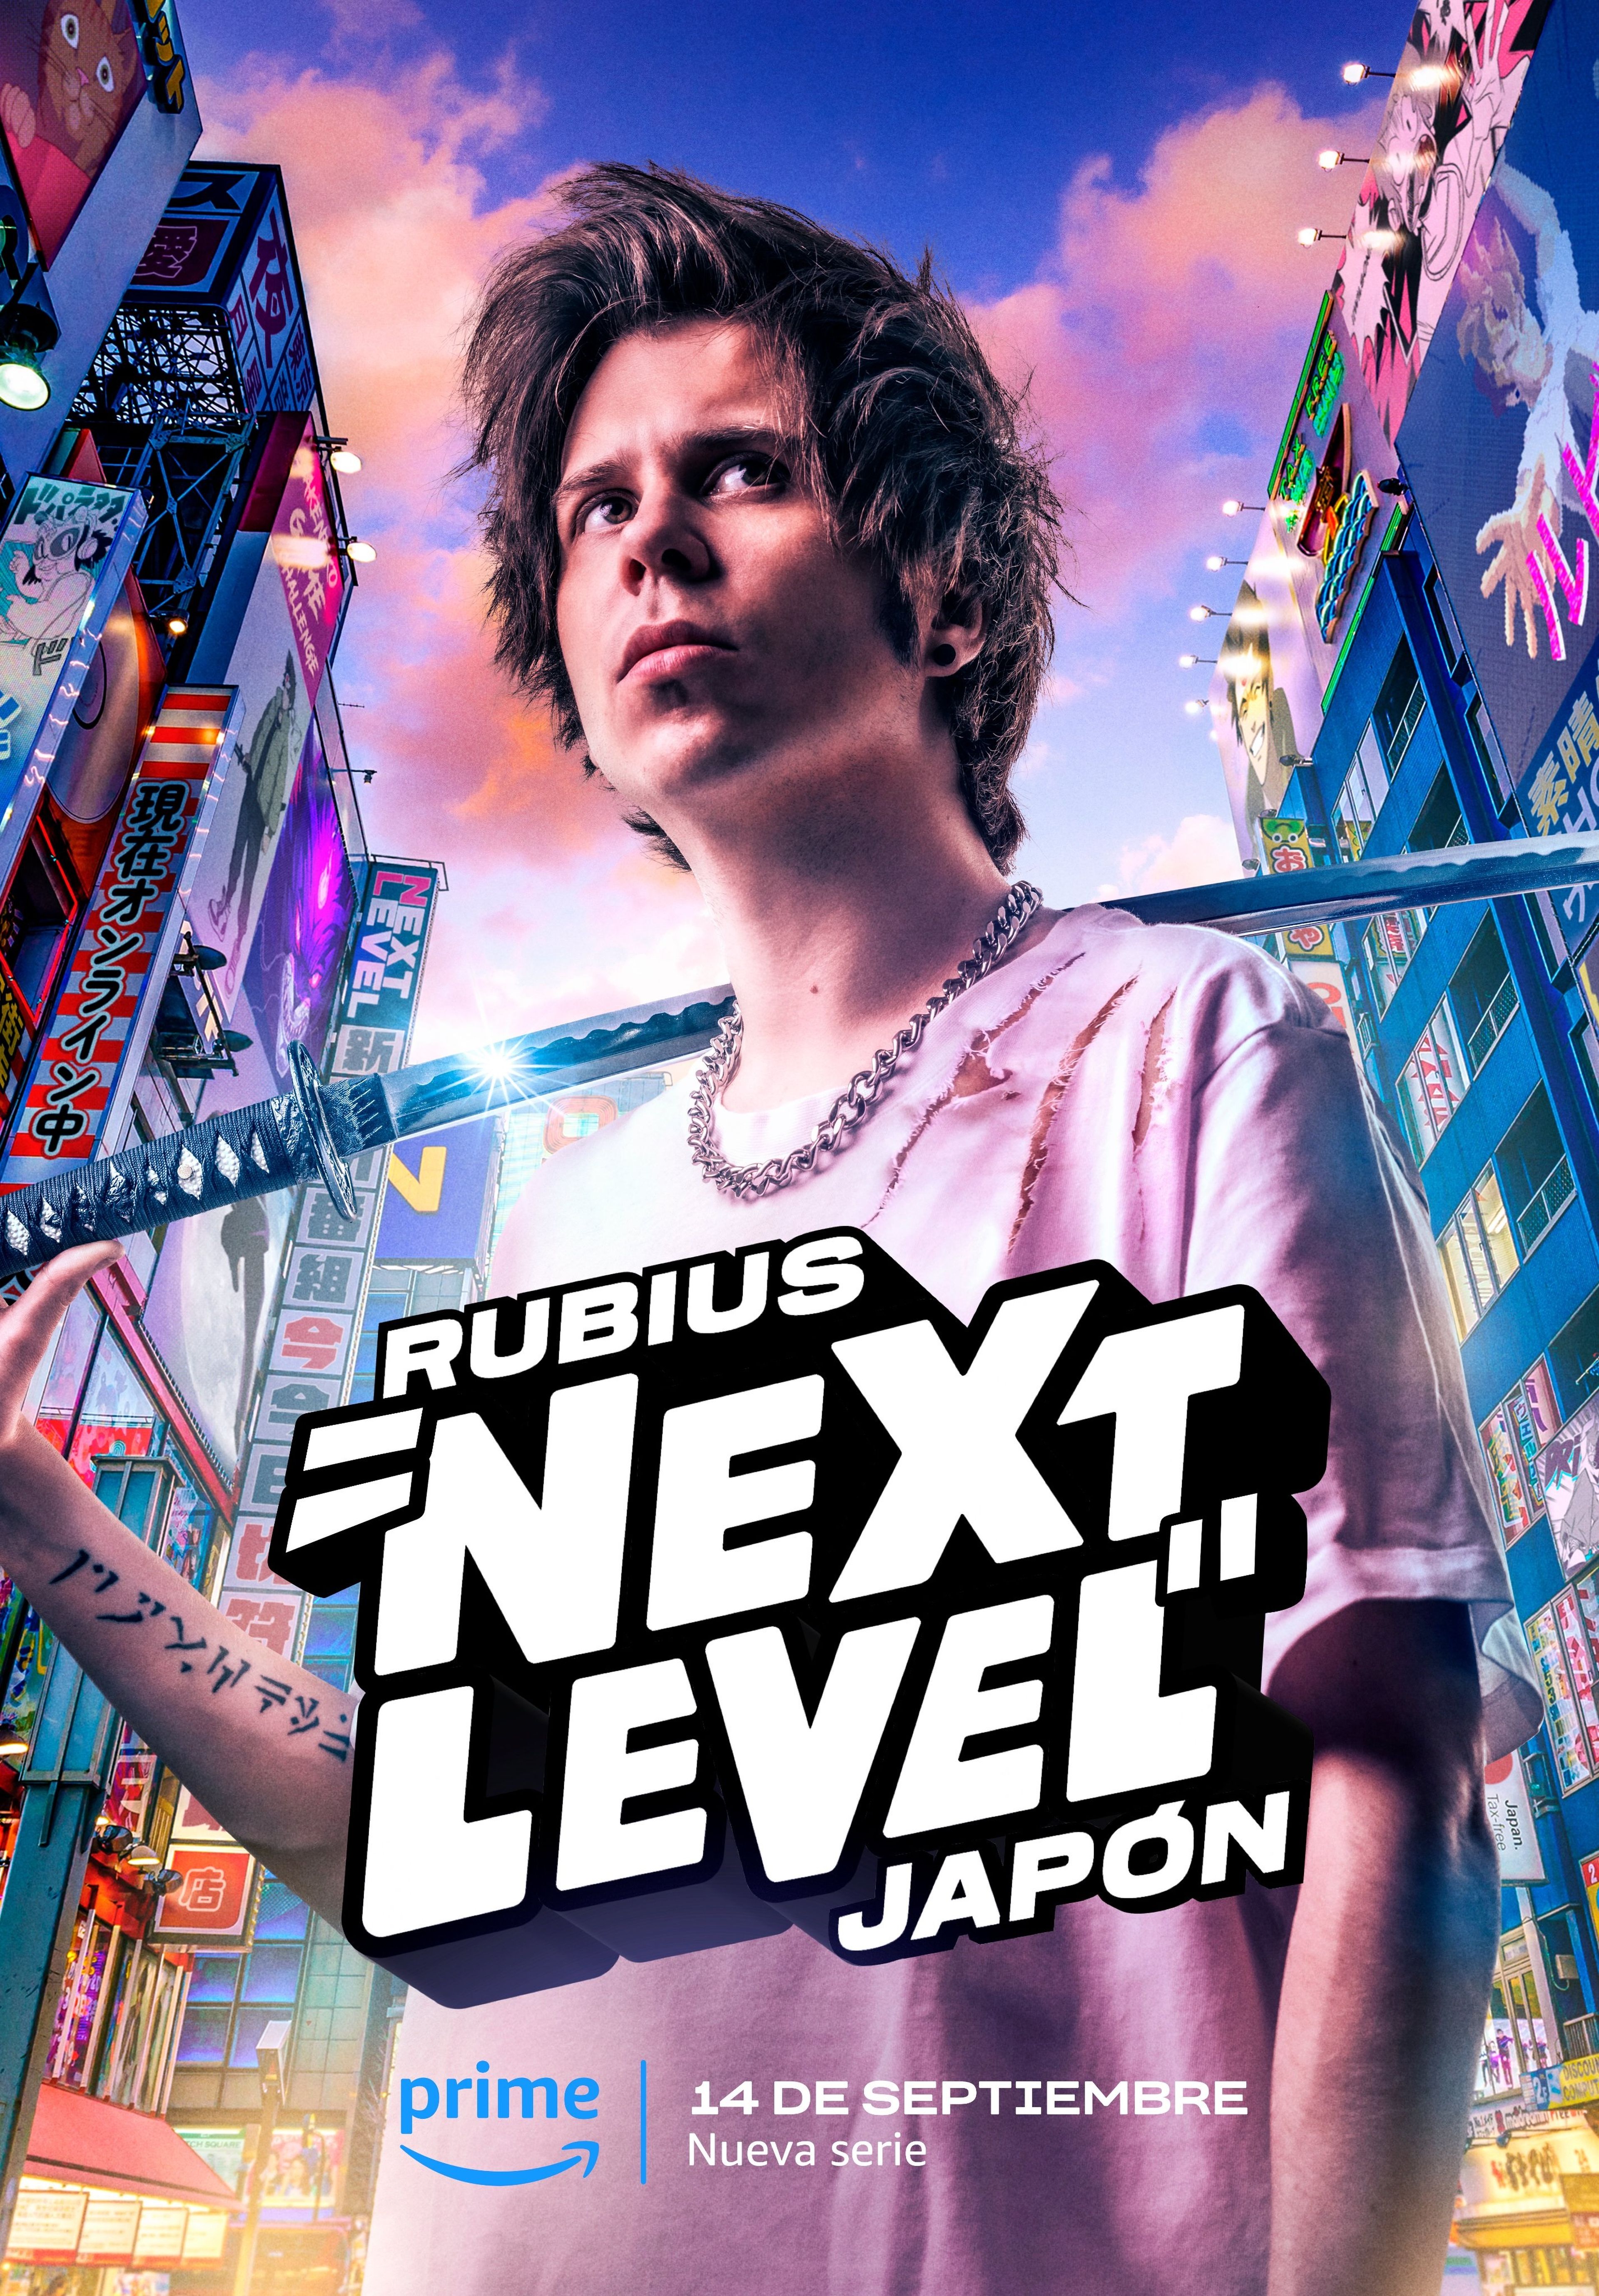 Rubius: Next Level Japón